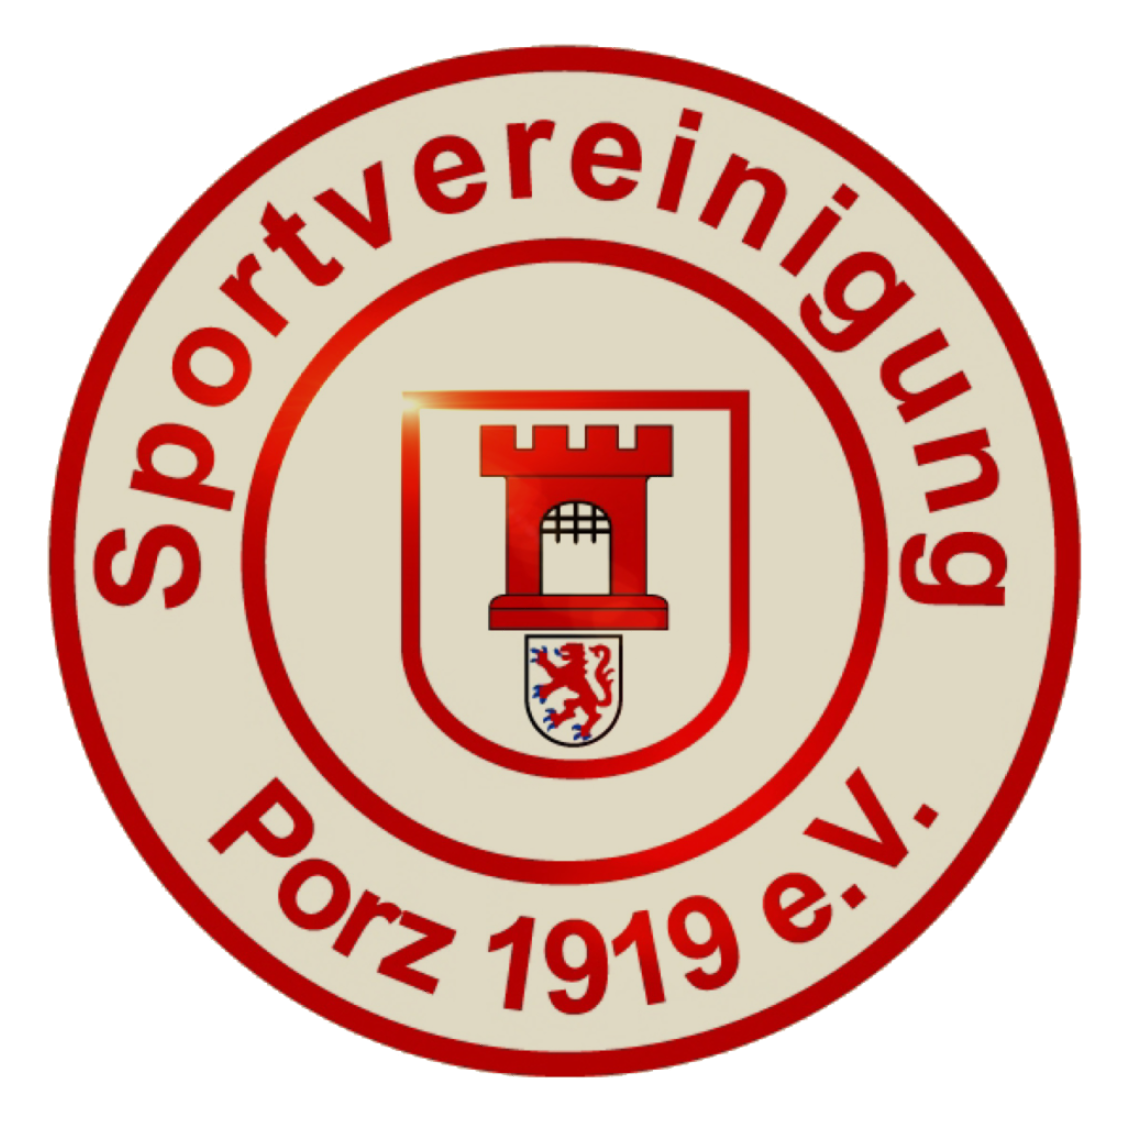 SpVg Porz 1919 team logo